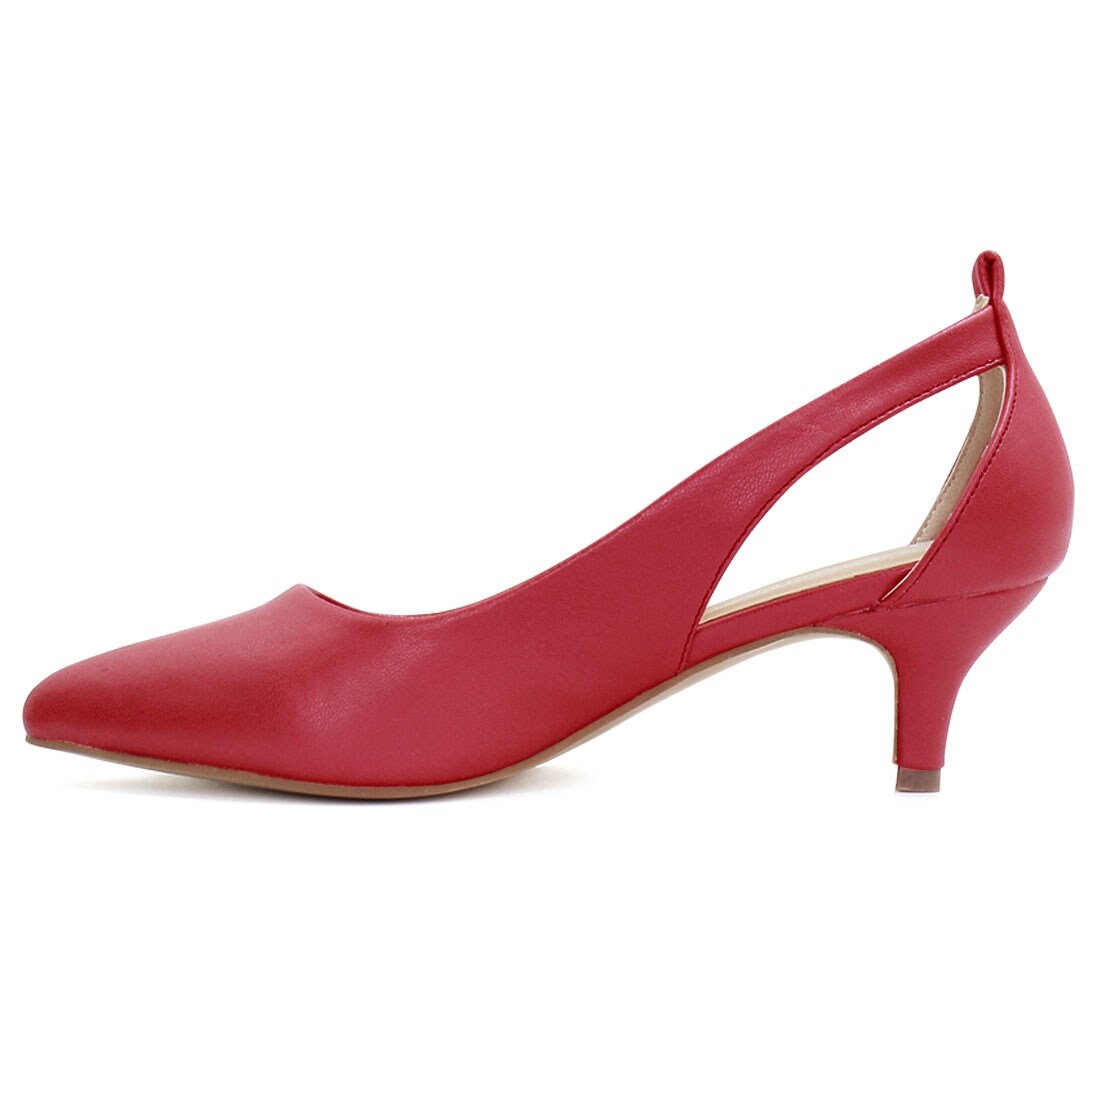 women's red kitten heel shoes